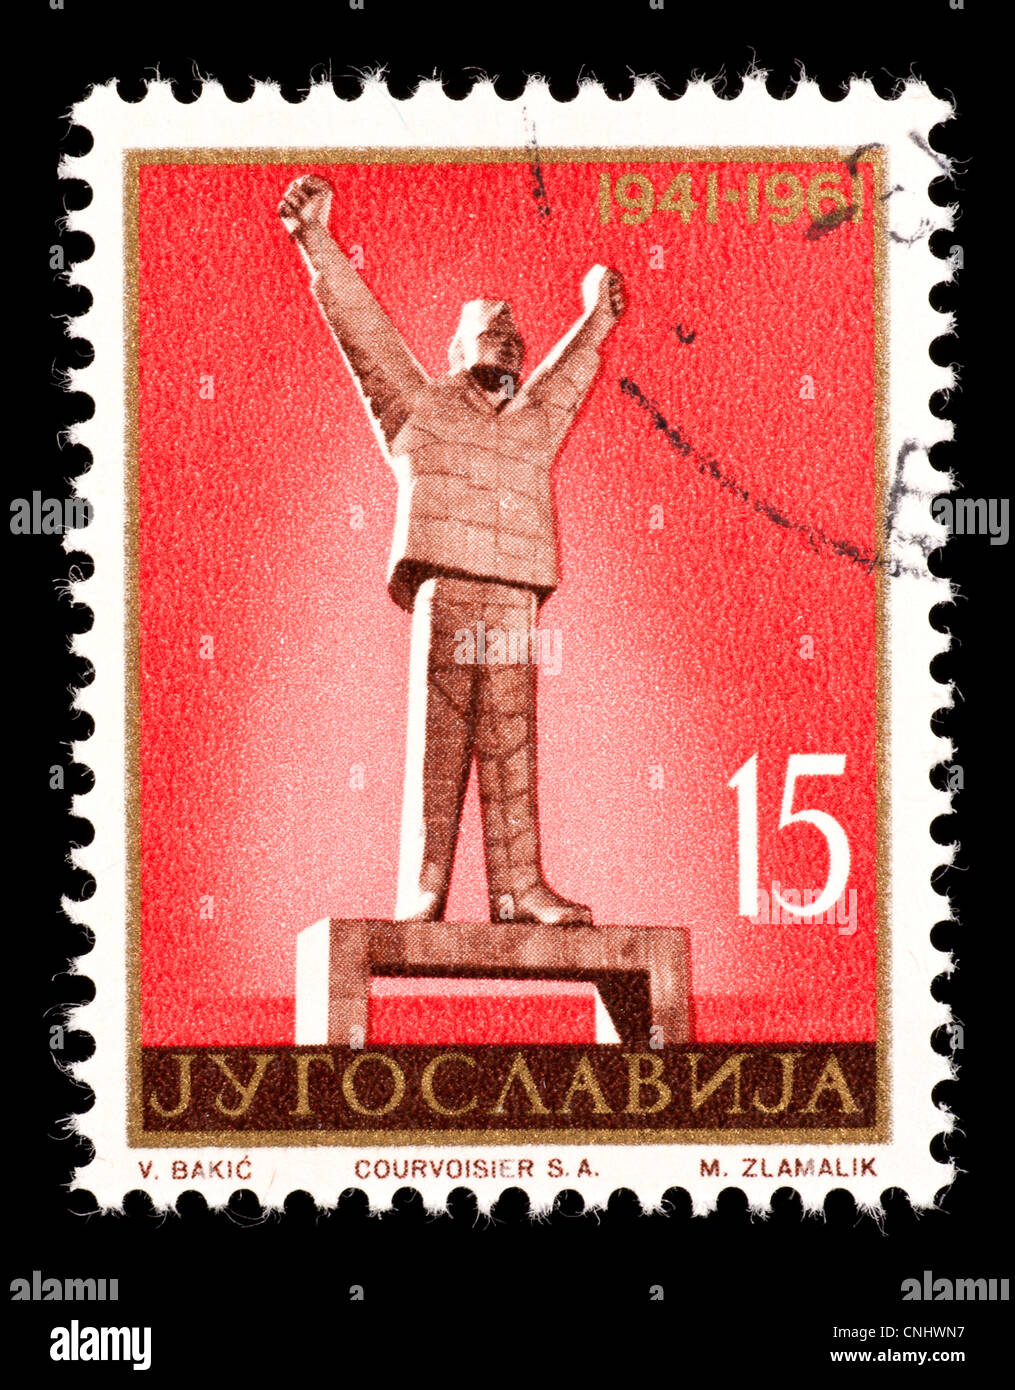 Postage stamp from the former Yugoslavia depicting the Stevan Filipovic statue in Valjevo. Stock Photo